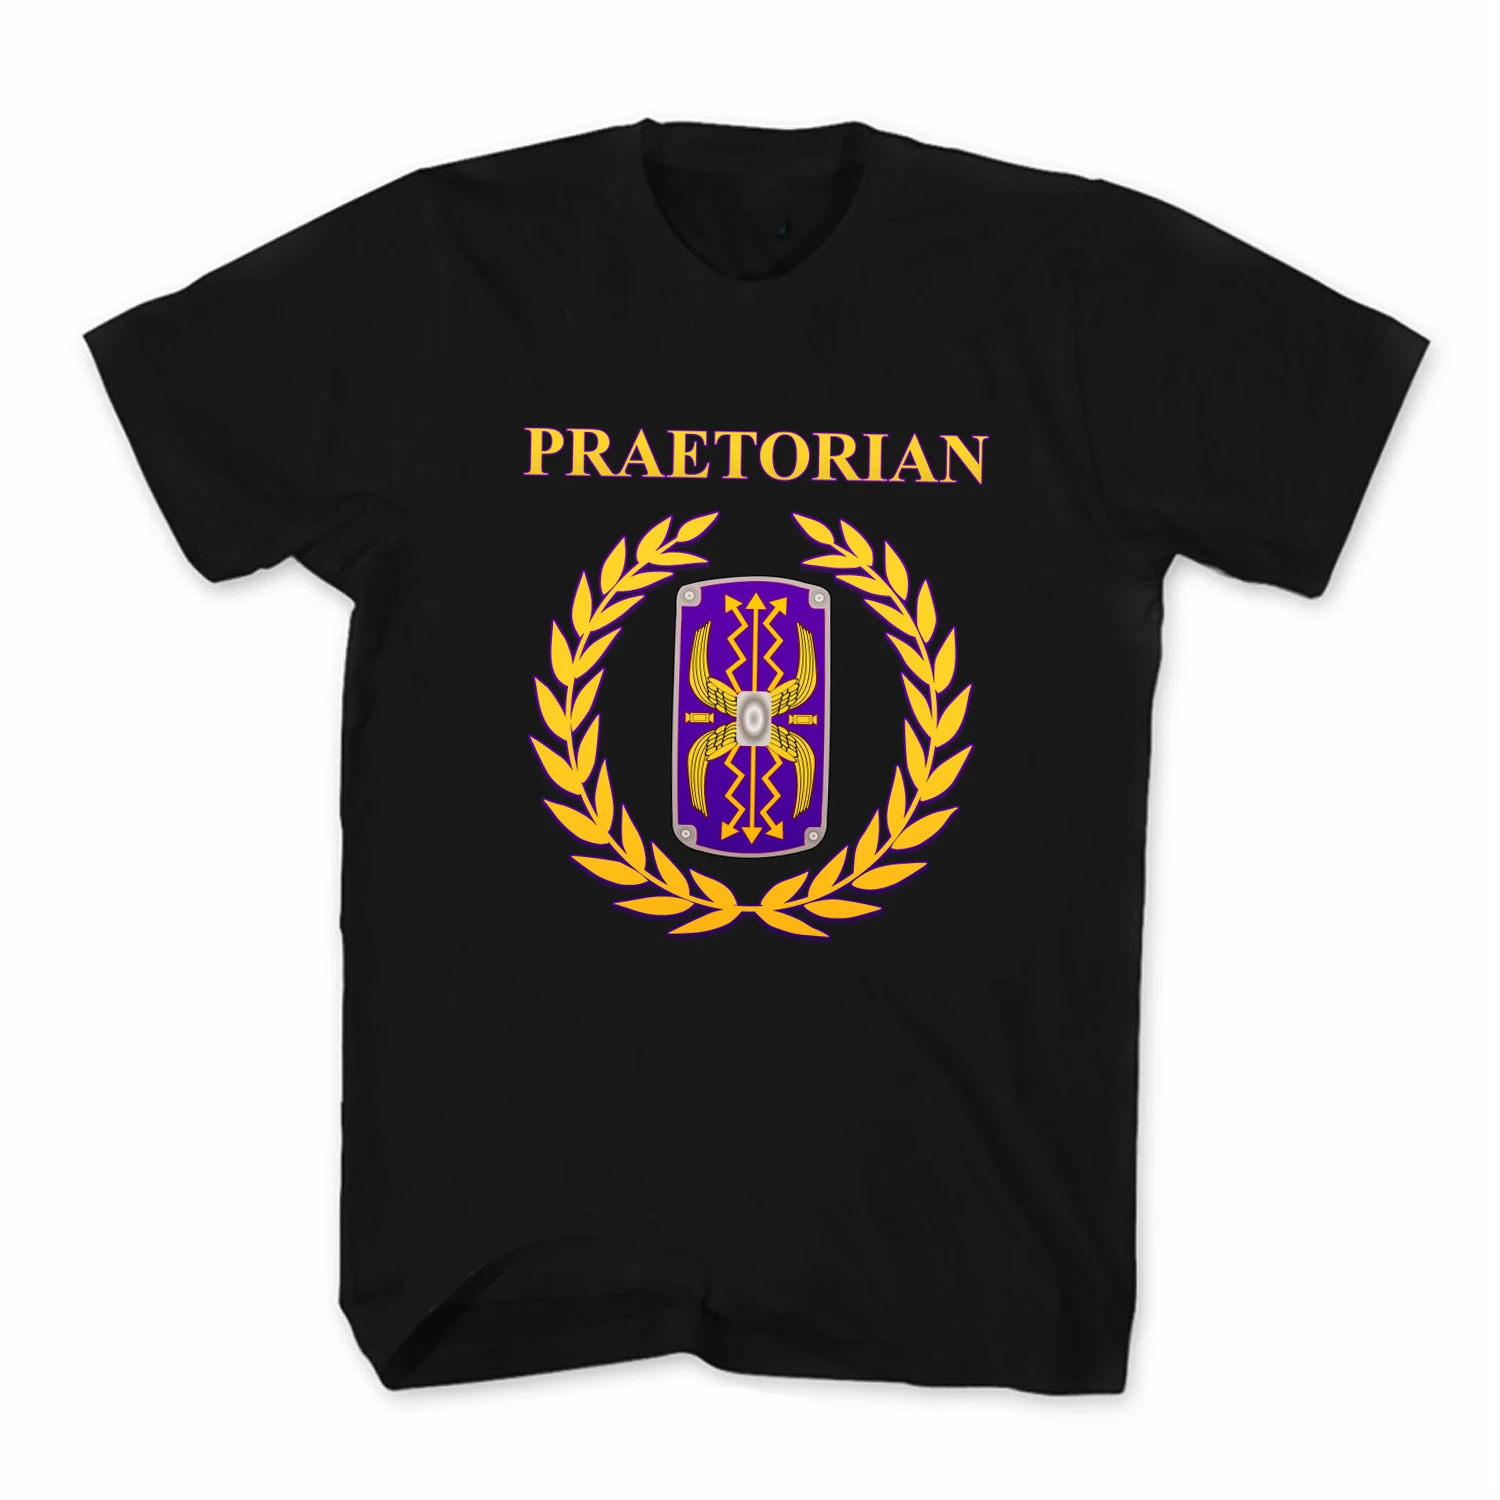 Roman Empire Praetorian Guard T-Shirt. Summer Cotton Short Sleeve O-Neck Mens T Shirt New S-3XL